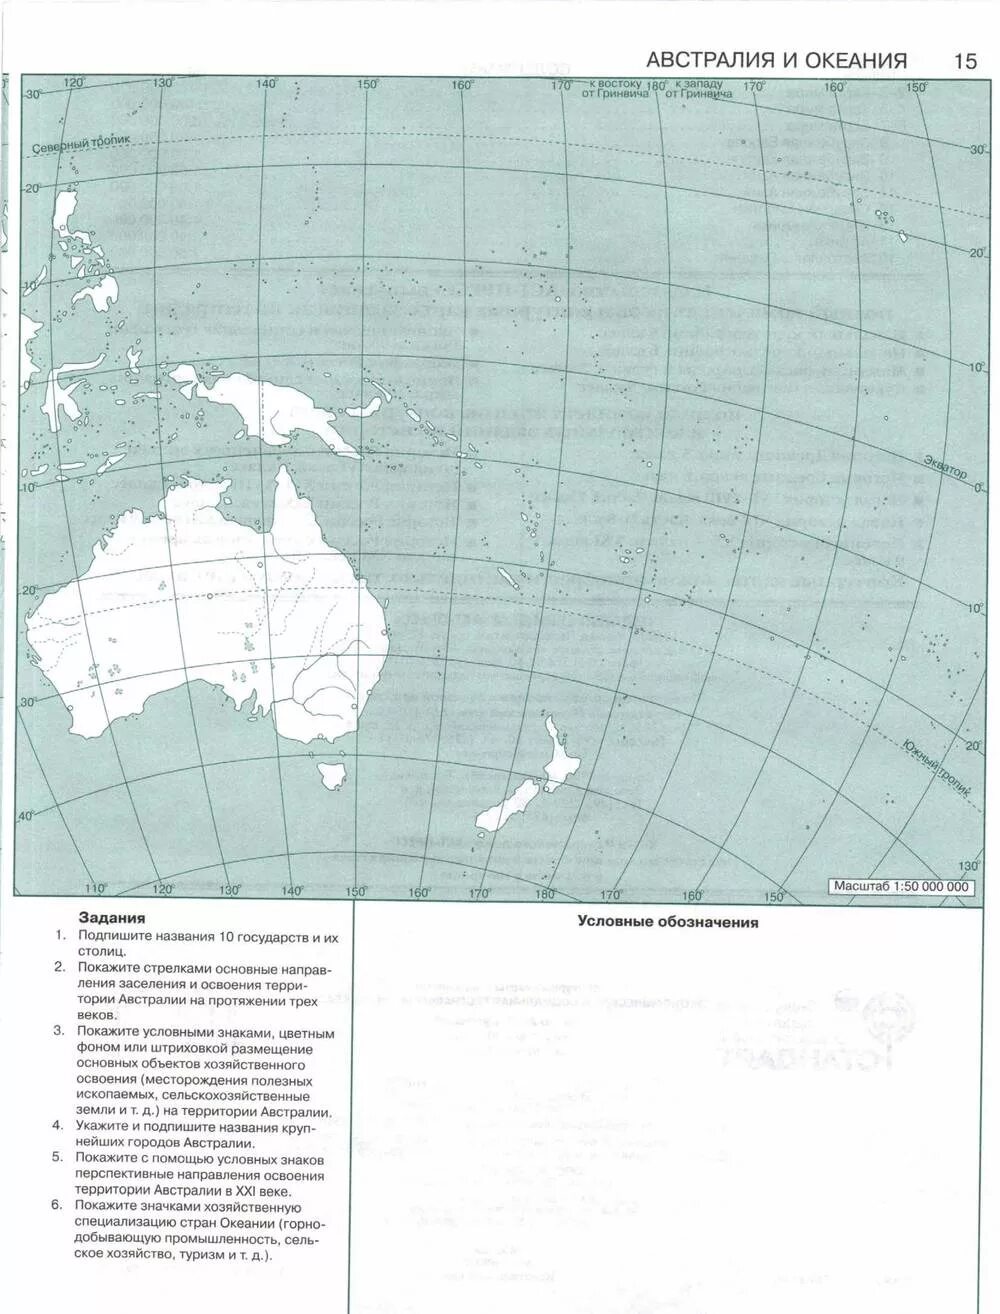 Тест география 7 класс австралия и океания. Контурная карта Австралии и Океании. Австралия и Океания политическая карта 7 класс контурная карта. Карта Австралии и Океании 7 класс контурная карта. Австралия и Океания контурная карта 7 класс.